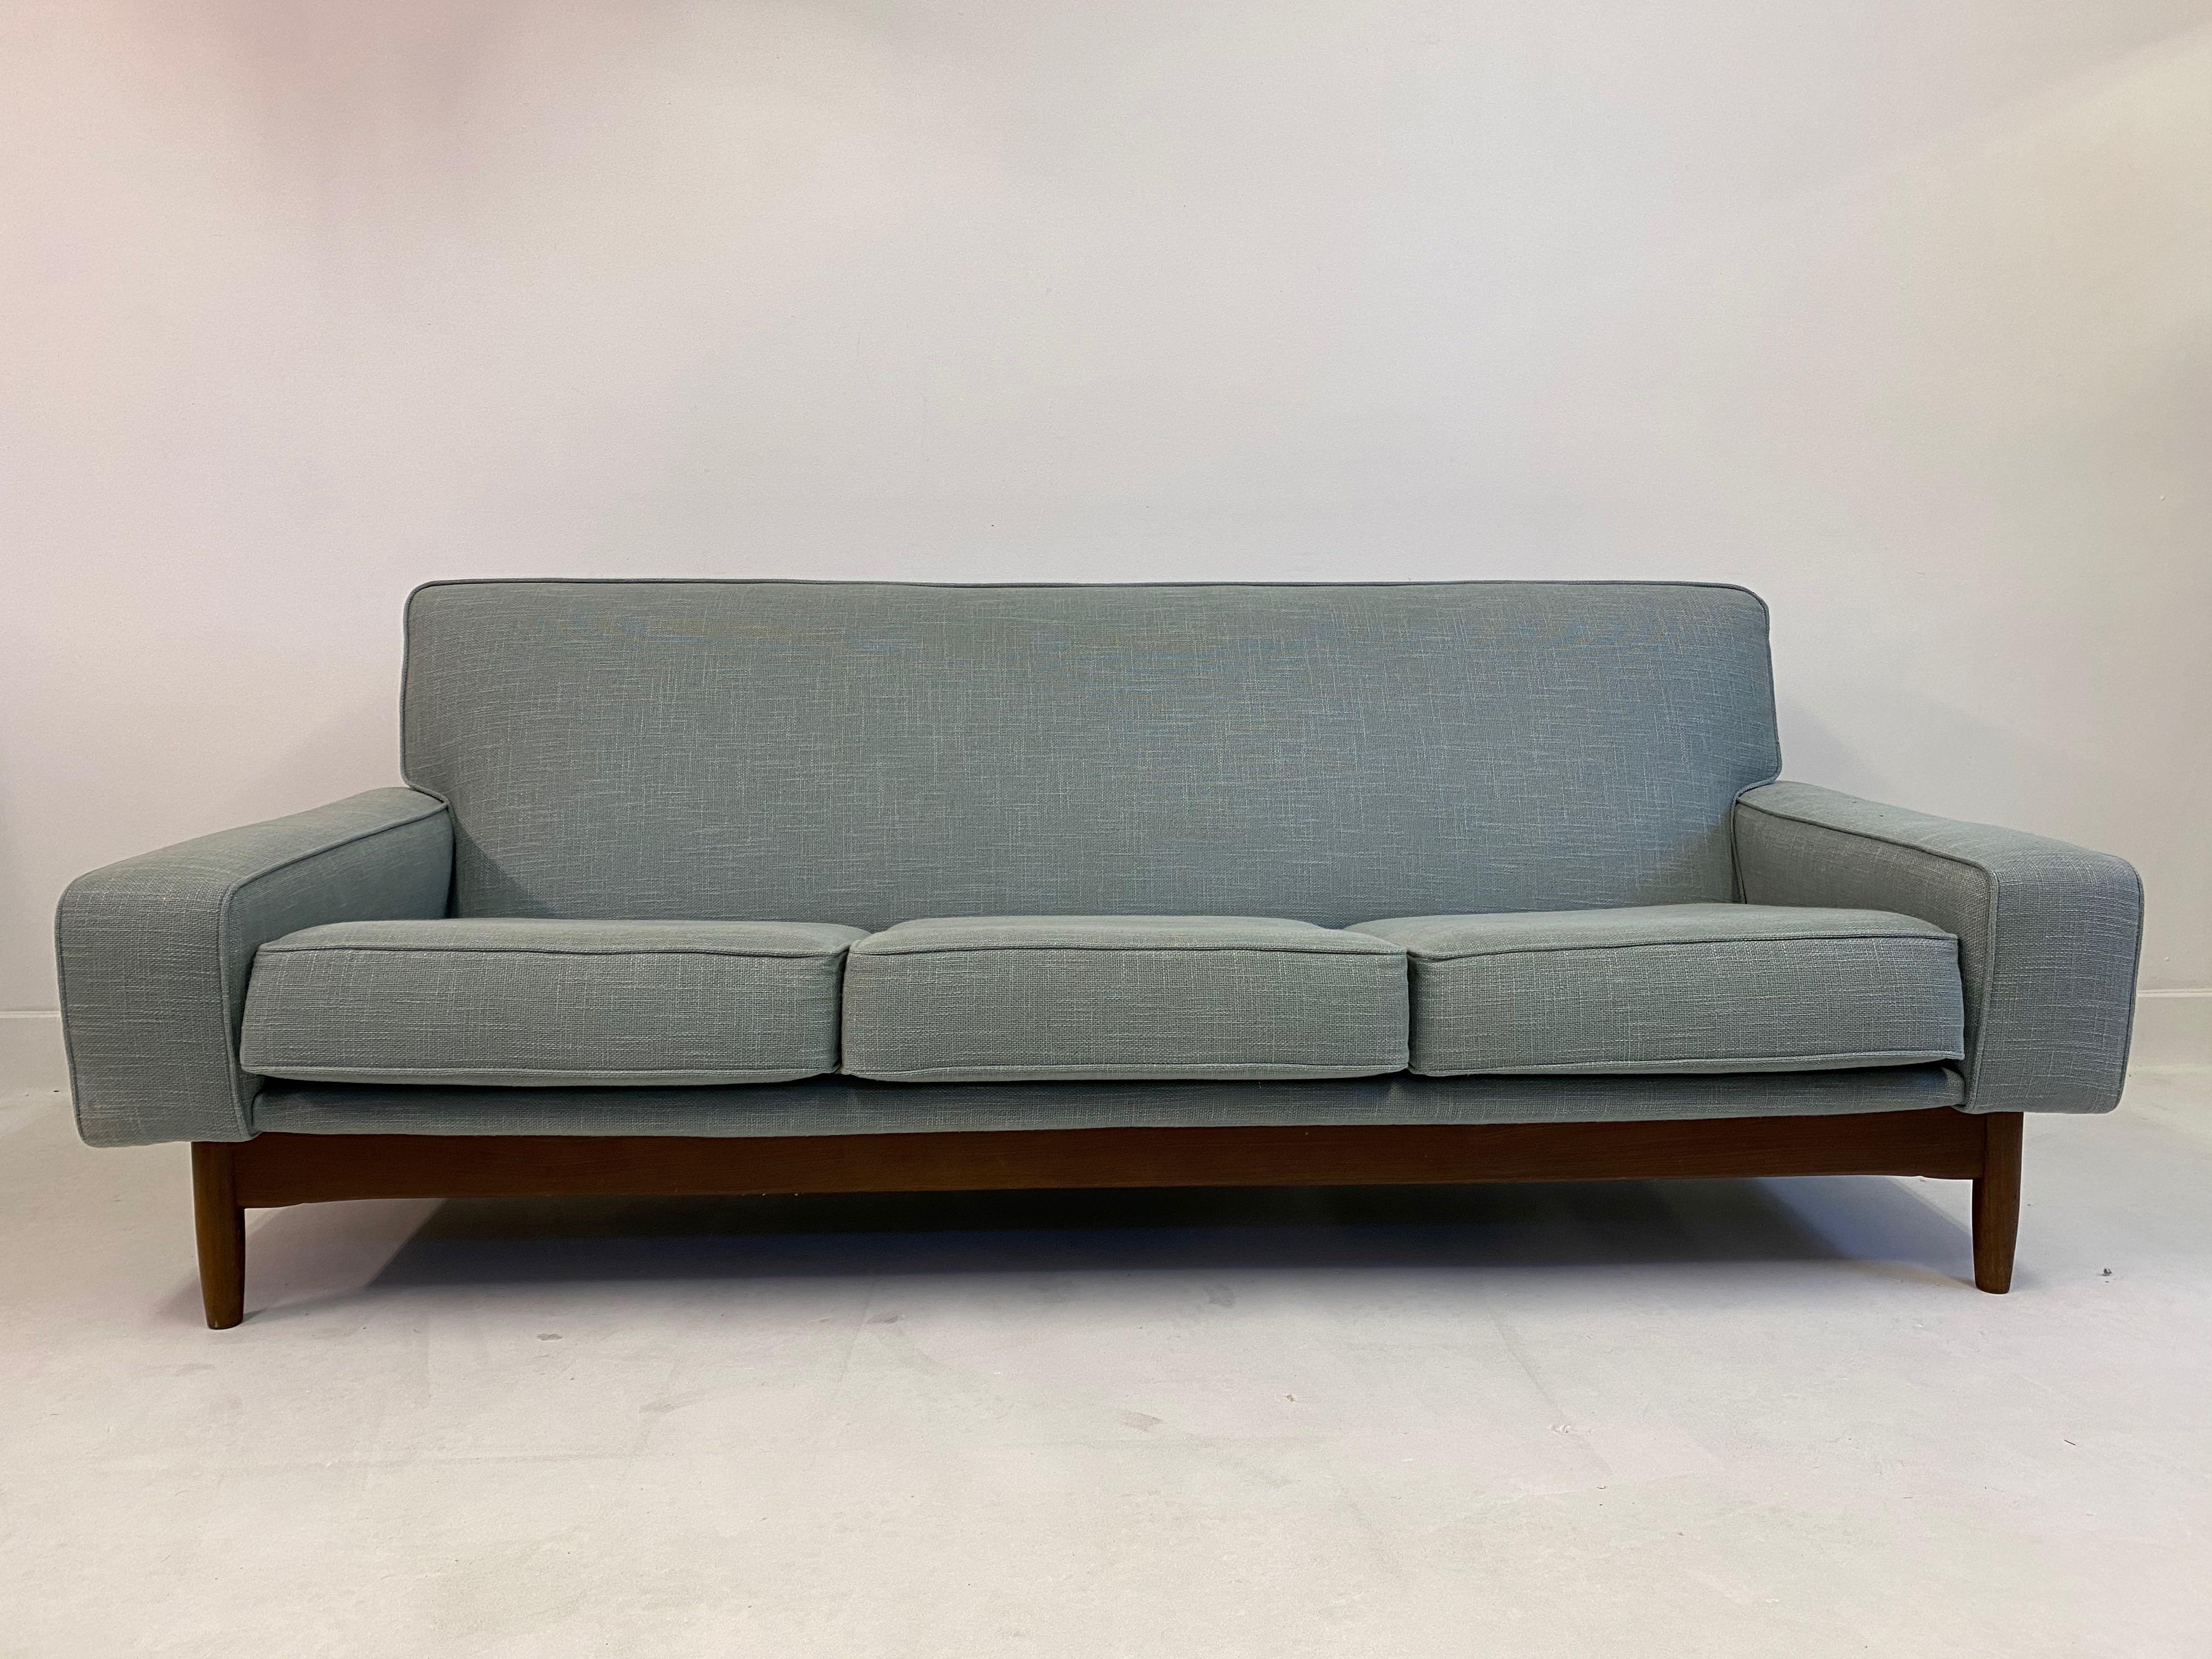 British Midcentury 1960s Three-Seat Teak Sofa by Ib Kofod-Larsen for G Plan